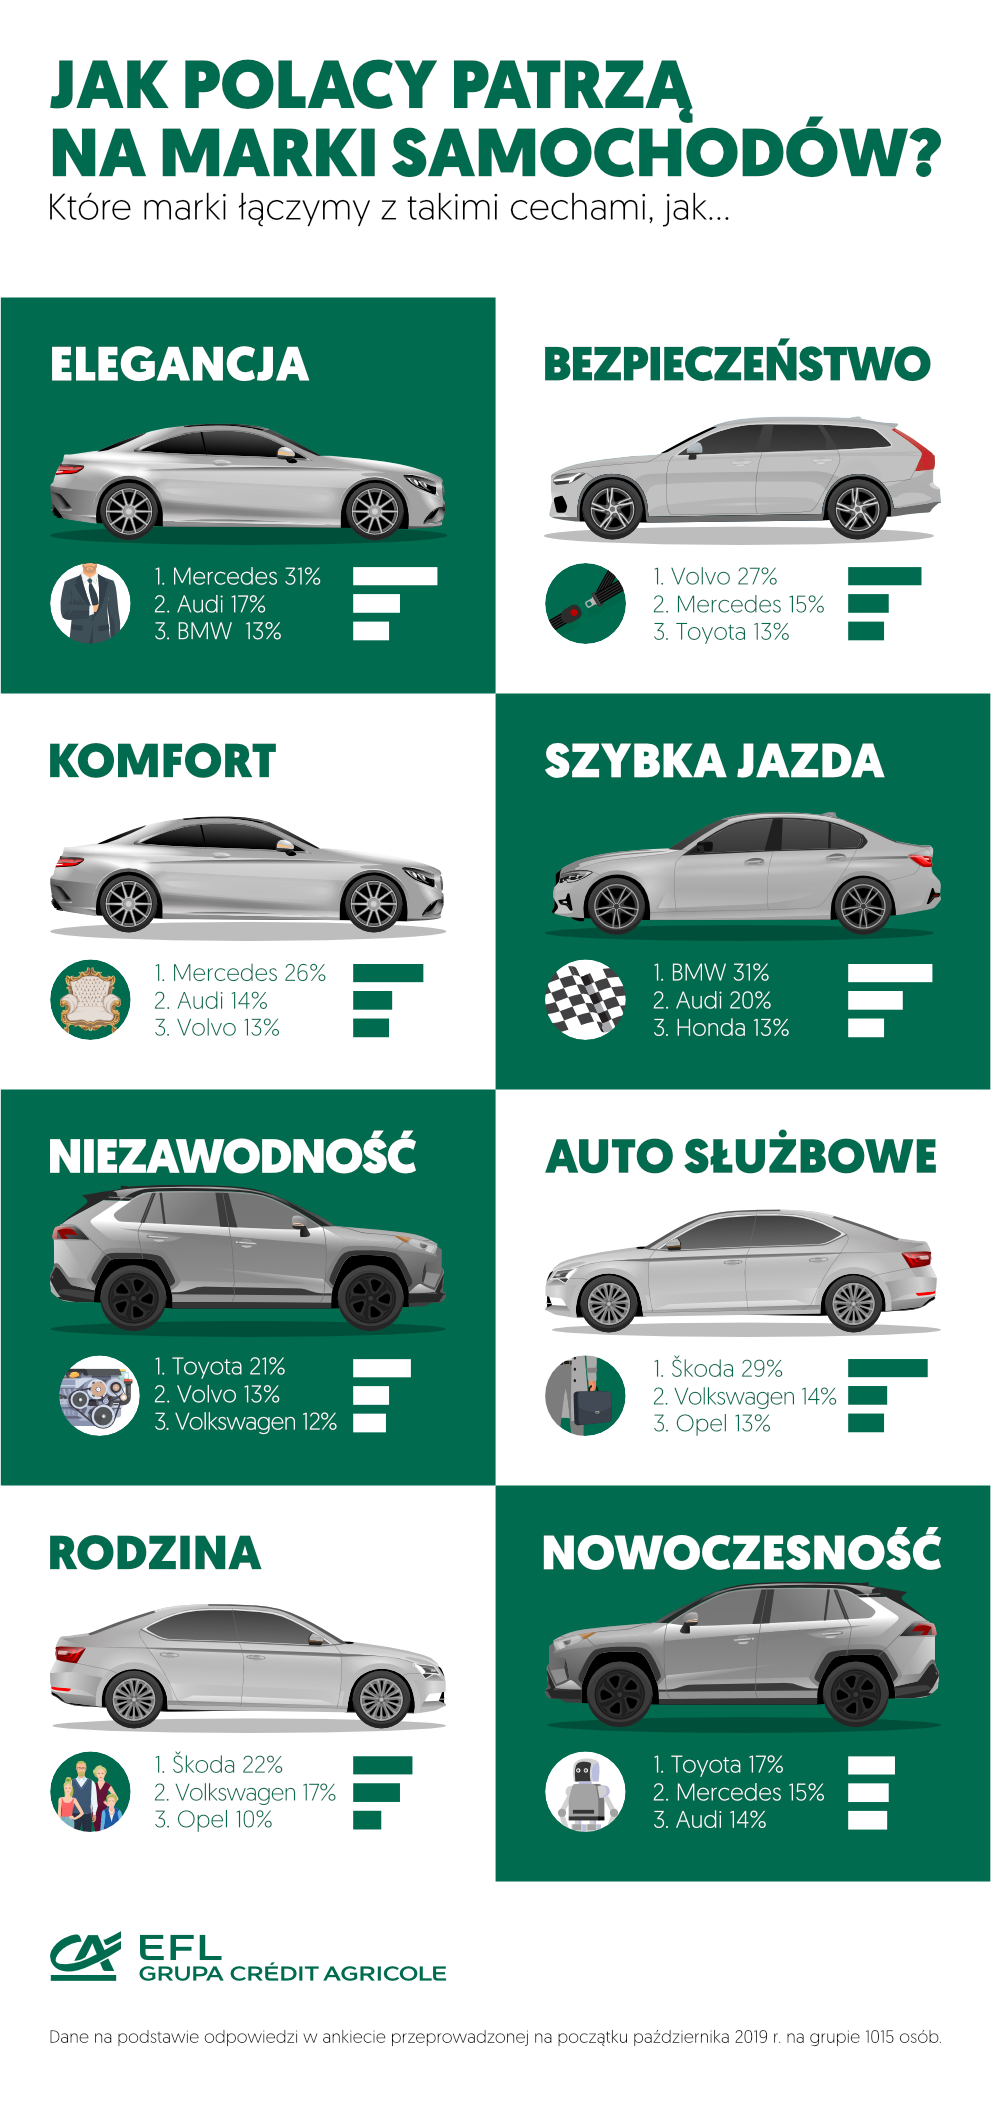 Jakie cechy Polacy przypisują markom samochodowym